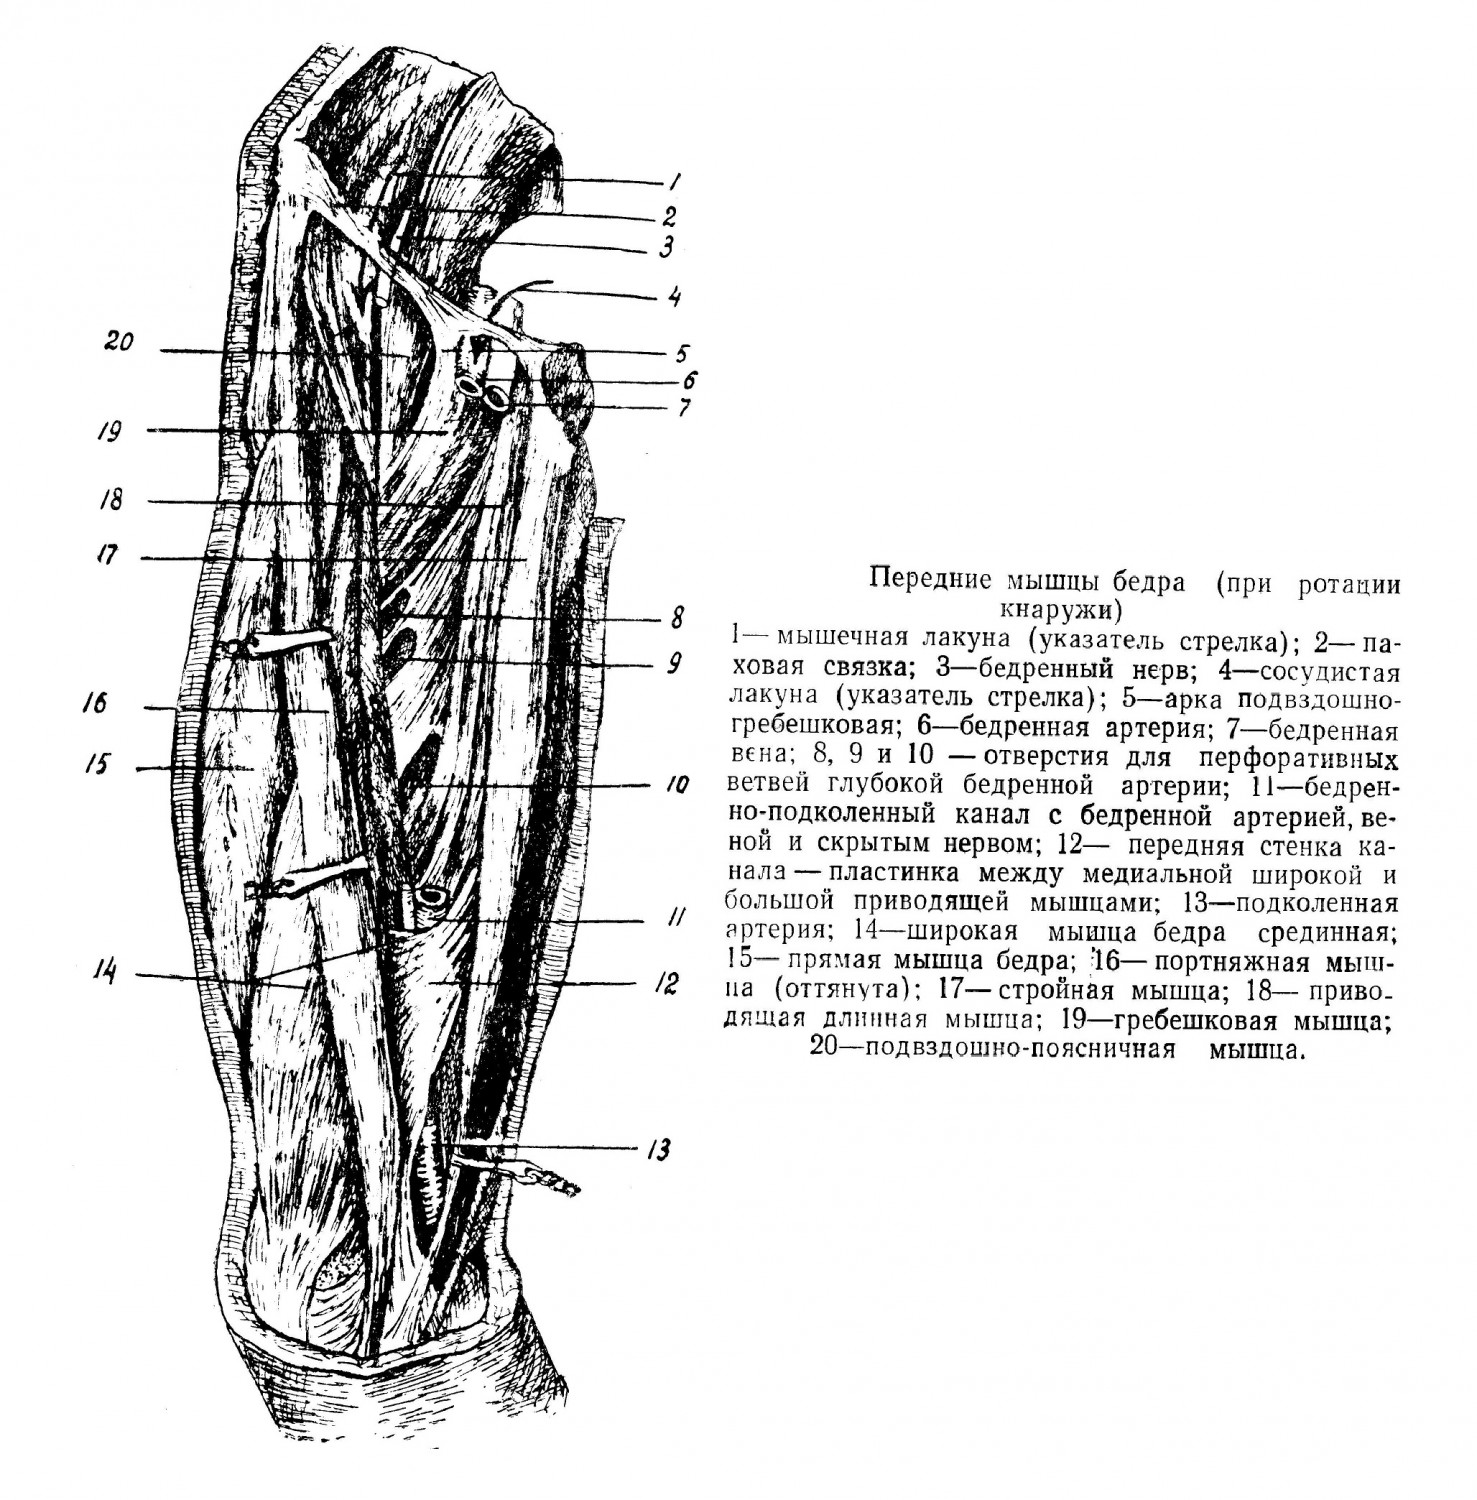 Передние мышцы бедра при ротации кнаружи